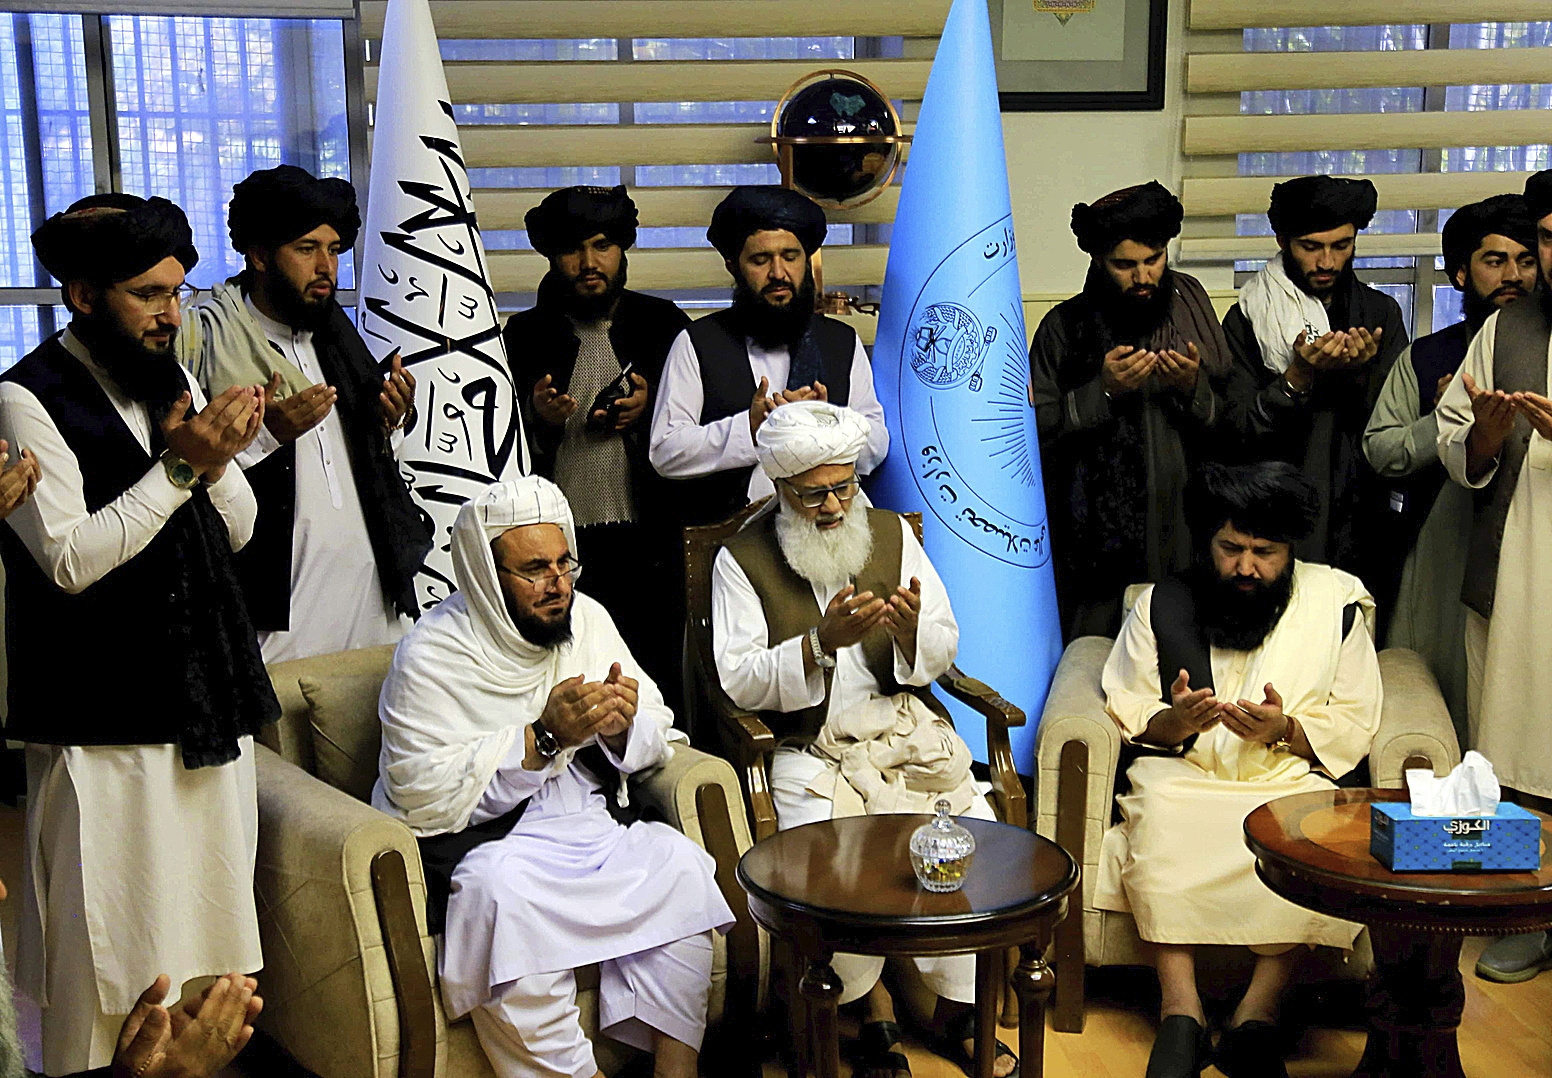 El nuevo ministro de Educacin, junto con otros lderes talibanes, en Kabul.